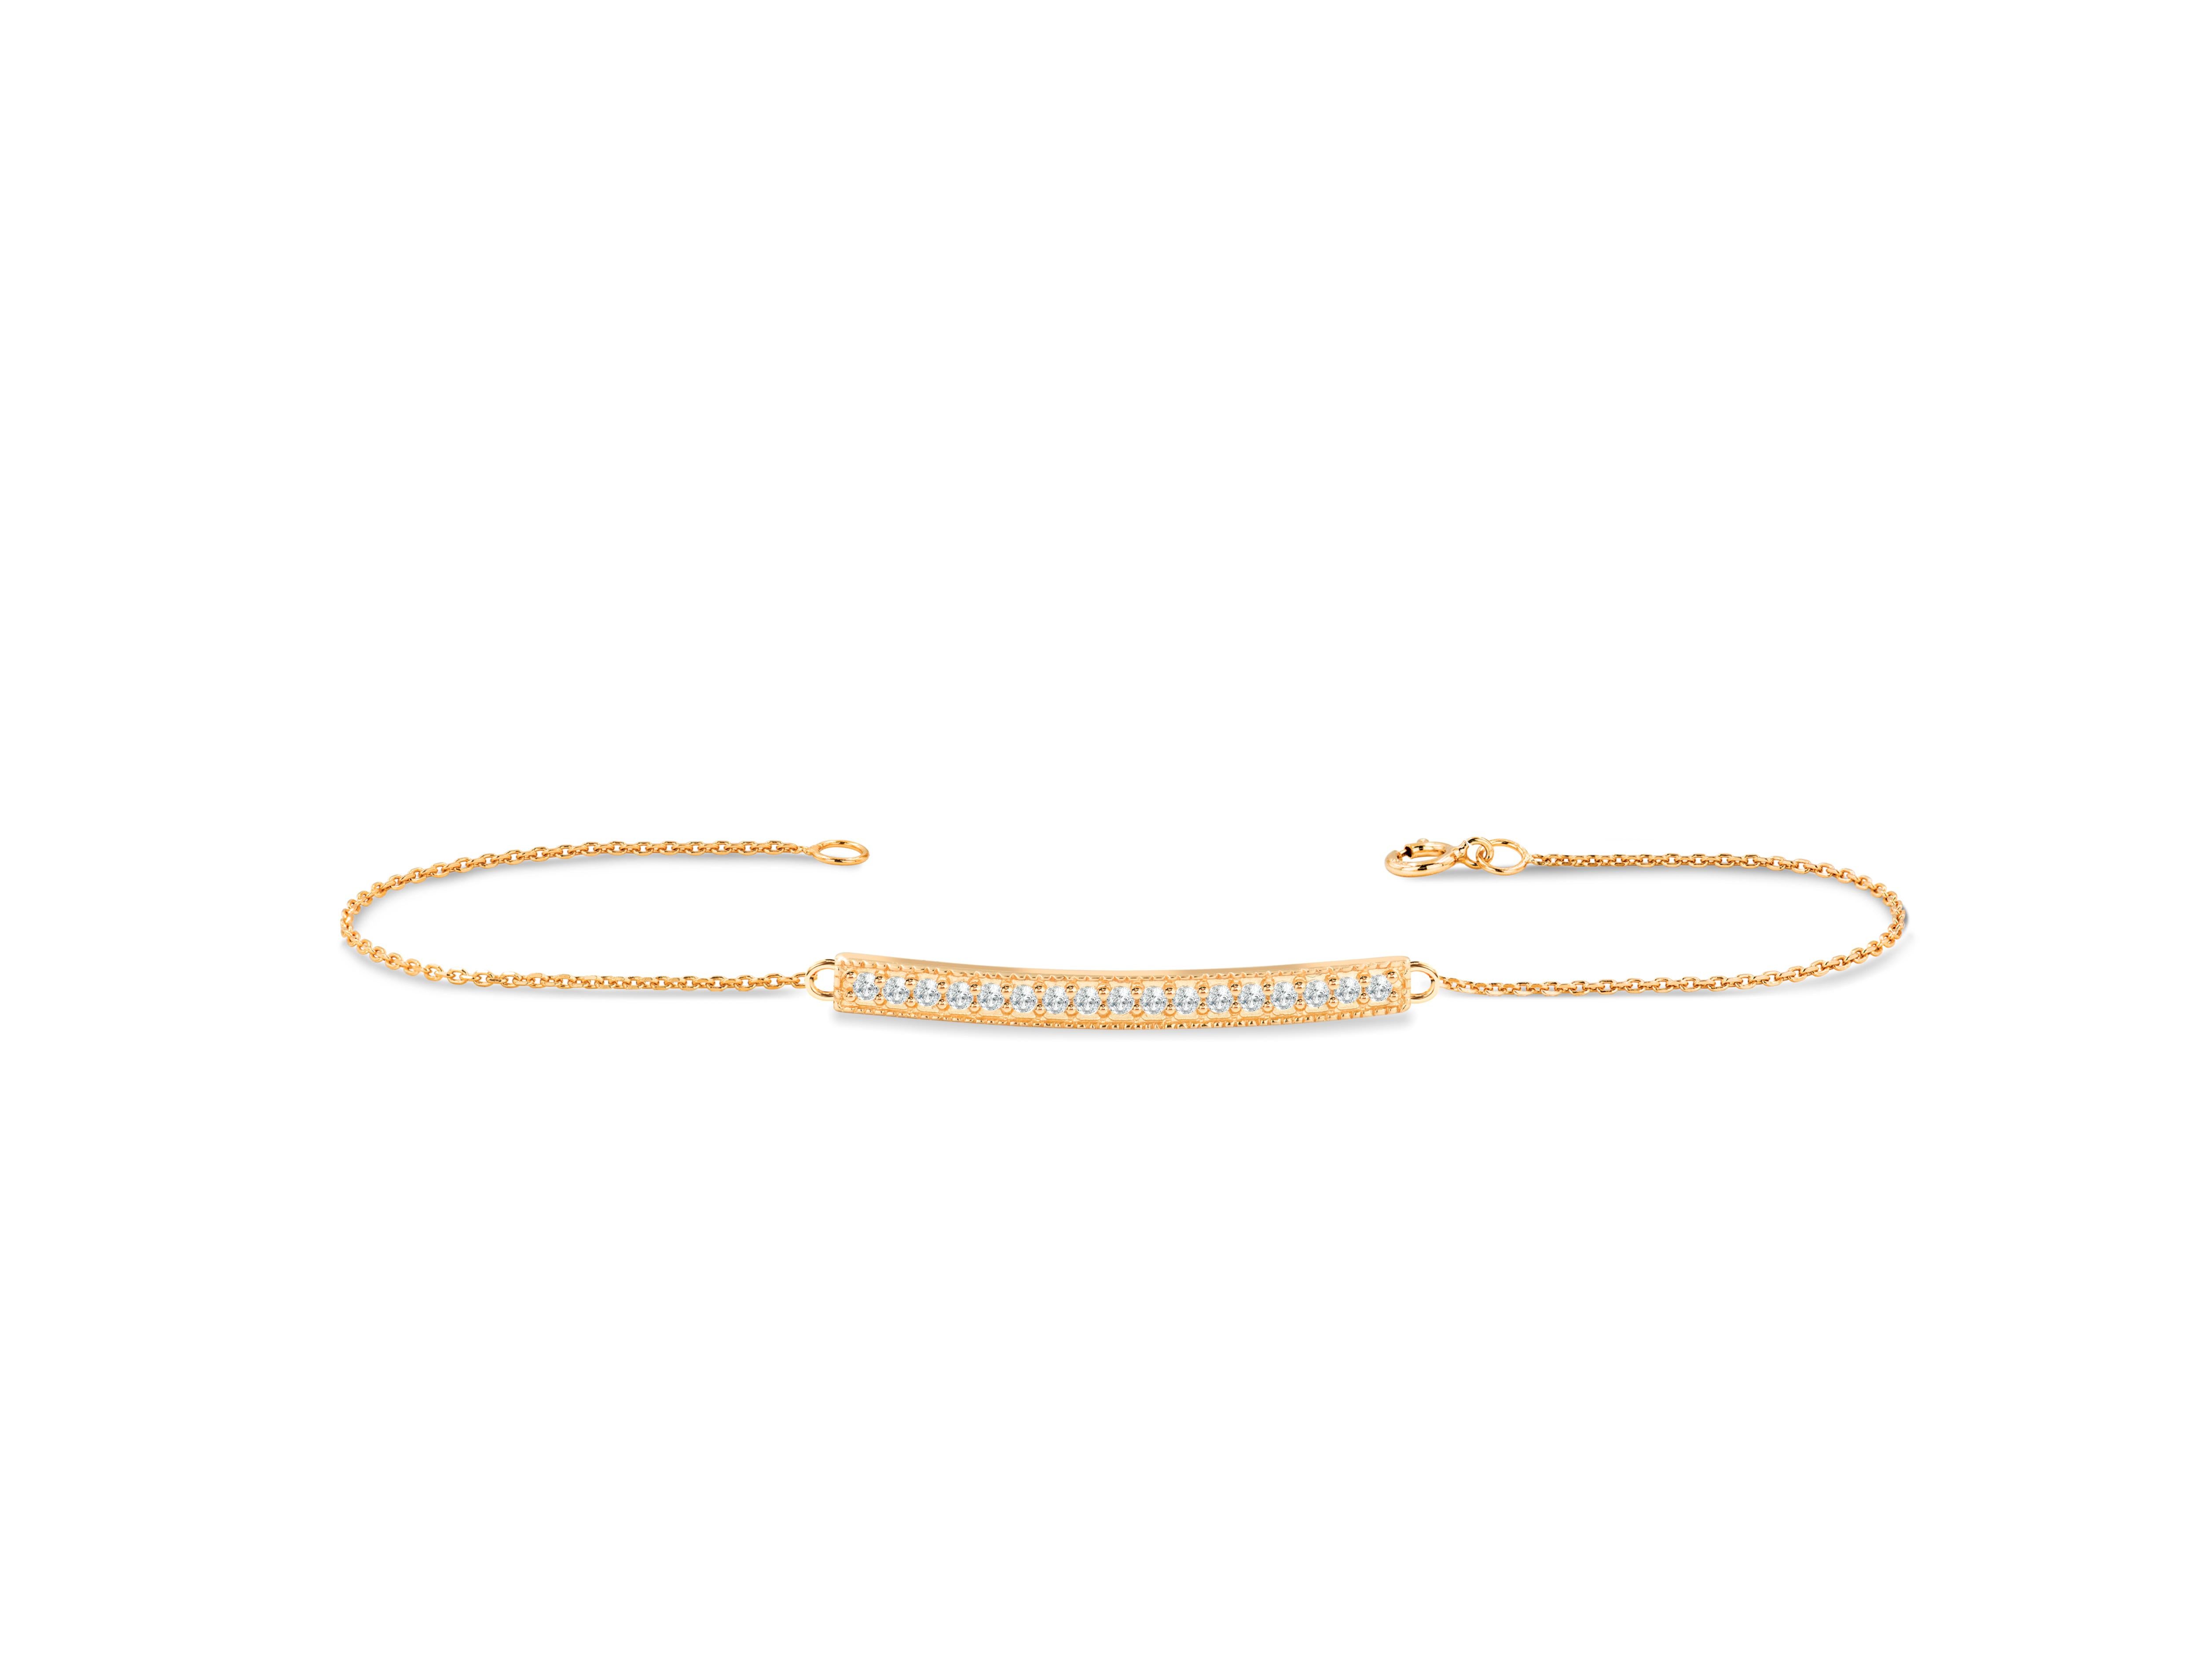 Beau et élégant, ce bracelet à barre de diamants est le bijou parfait à superposer à vos autres bracelets. Il est fabriqué en or pur et se compose de diamants véritables et naturels. Ce bracelet minimaliste donne un aspect sophistiqué et élégant à